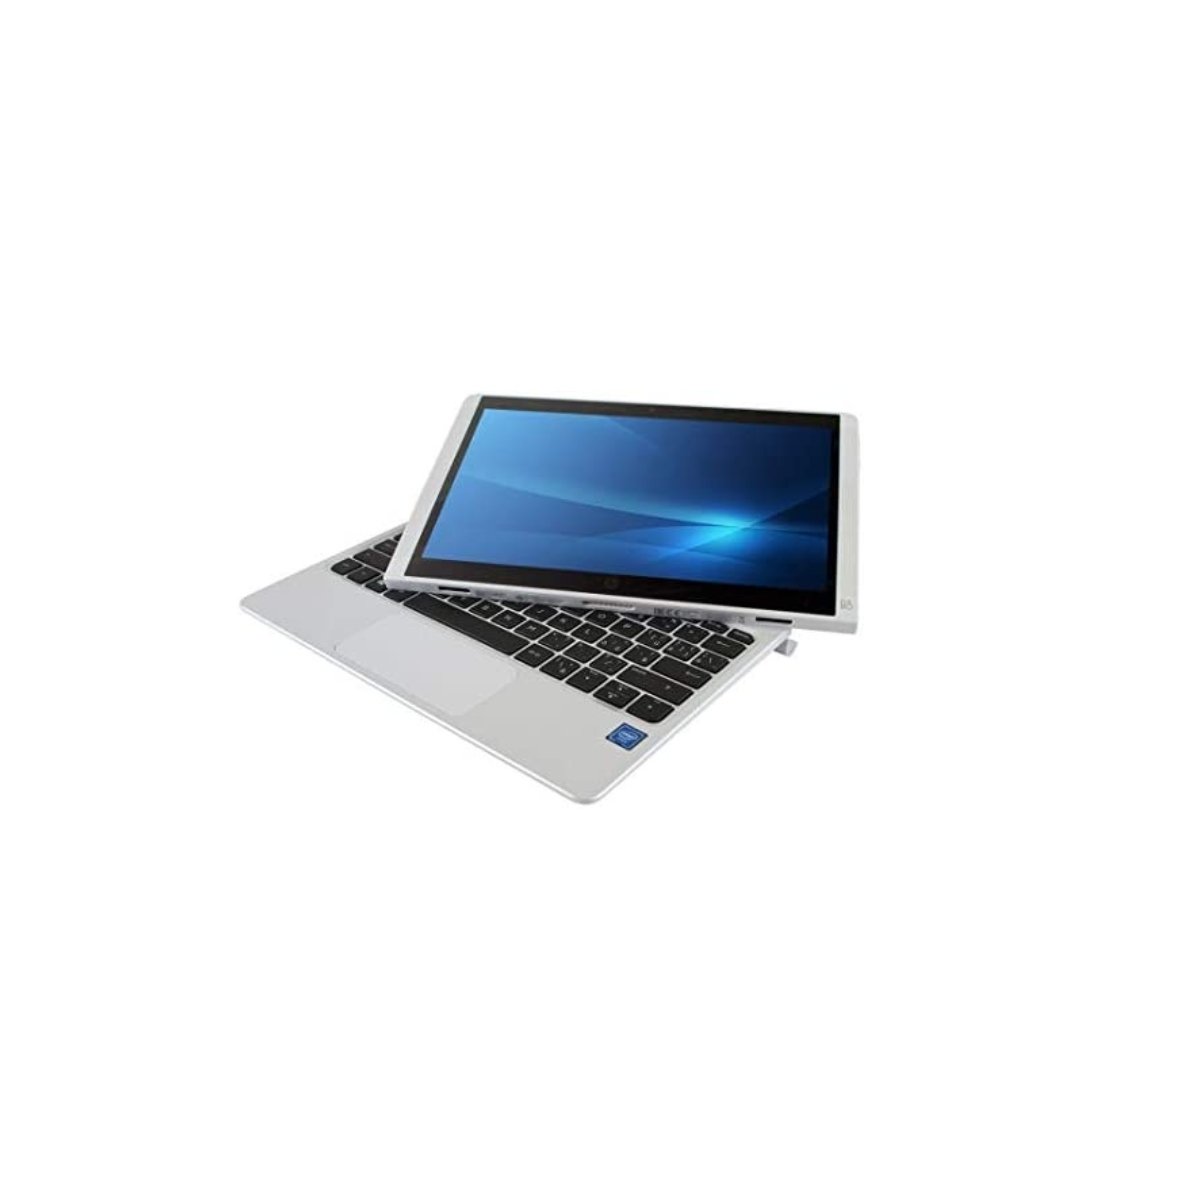 Laptop - Hp Elite X2 1012 G2 | i5 7ma Gen. | 8 GB RAM 240 GB SSD | 12.3" - PC ONE MÉXICOHPLaptop